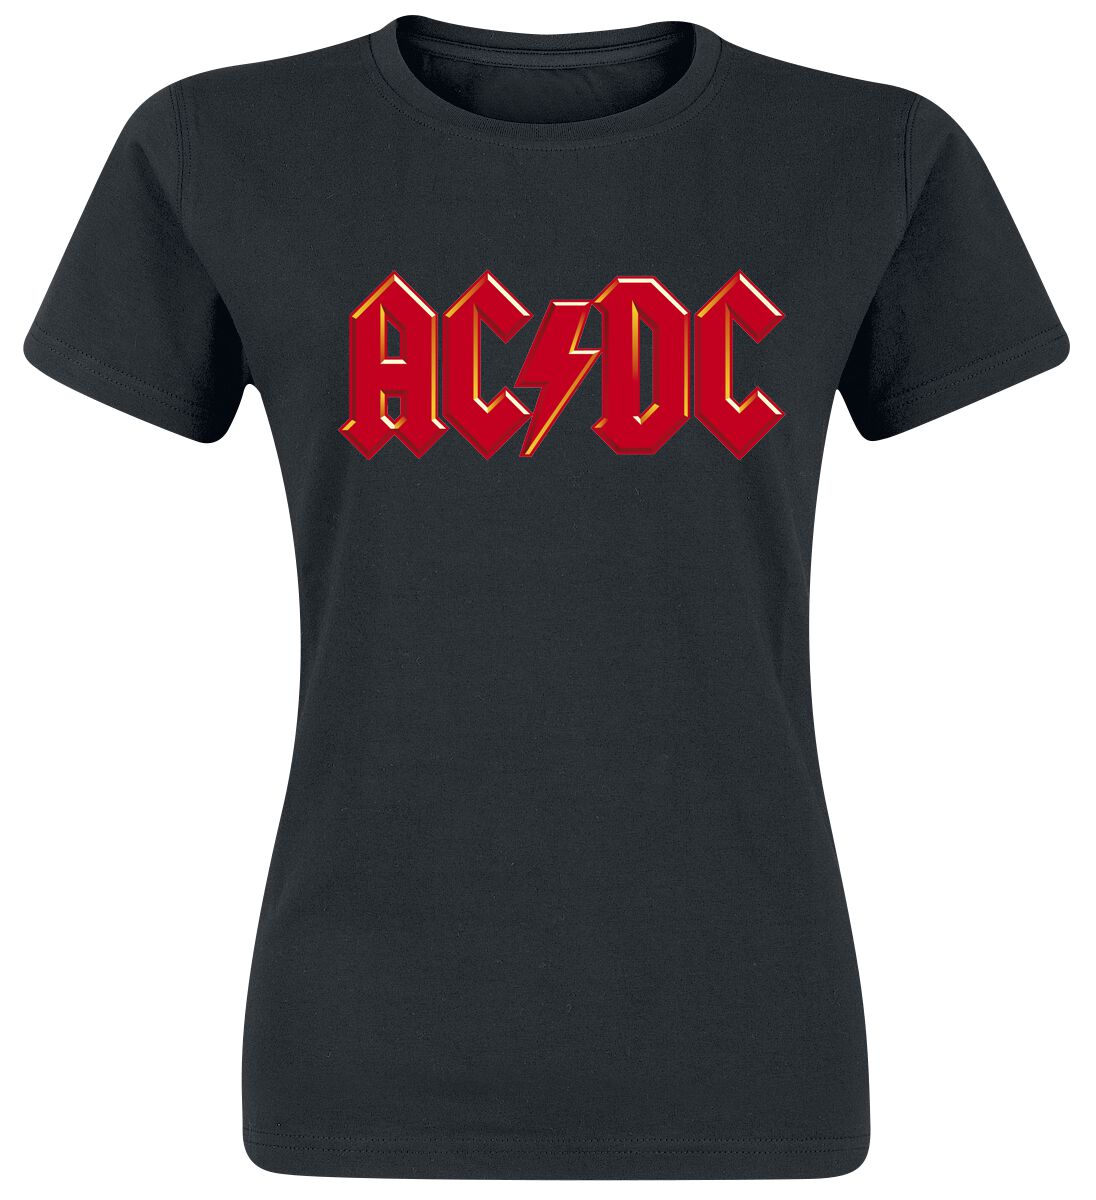 T-Shirt Manches courtes de AC/DC - Red Logo - S à XXL - pour Femme - noir